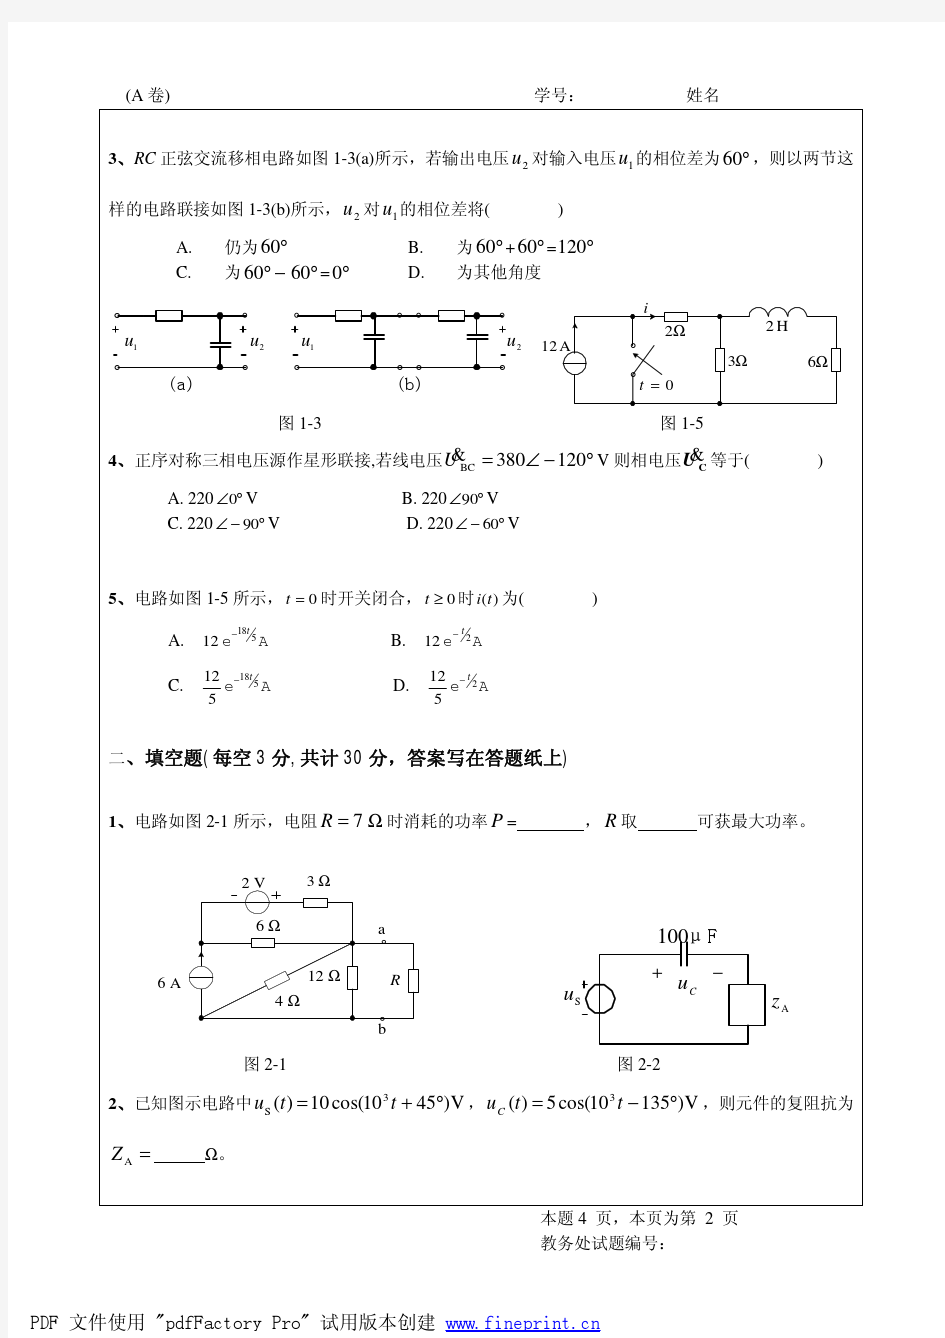 四川大学电路原理期09级期末考试试卷及答案